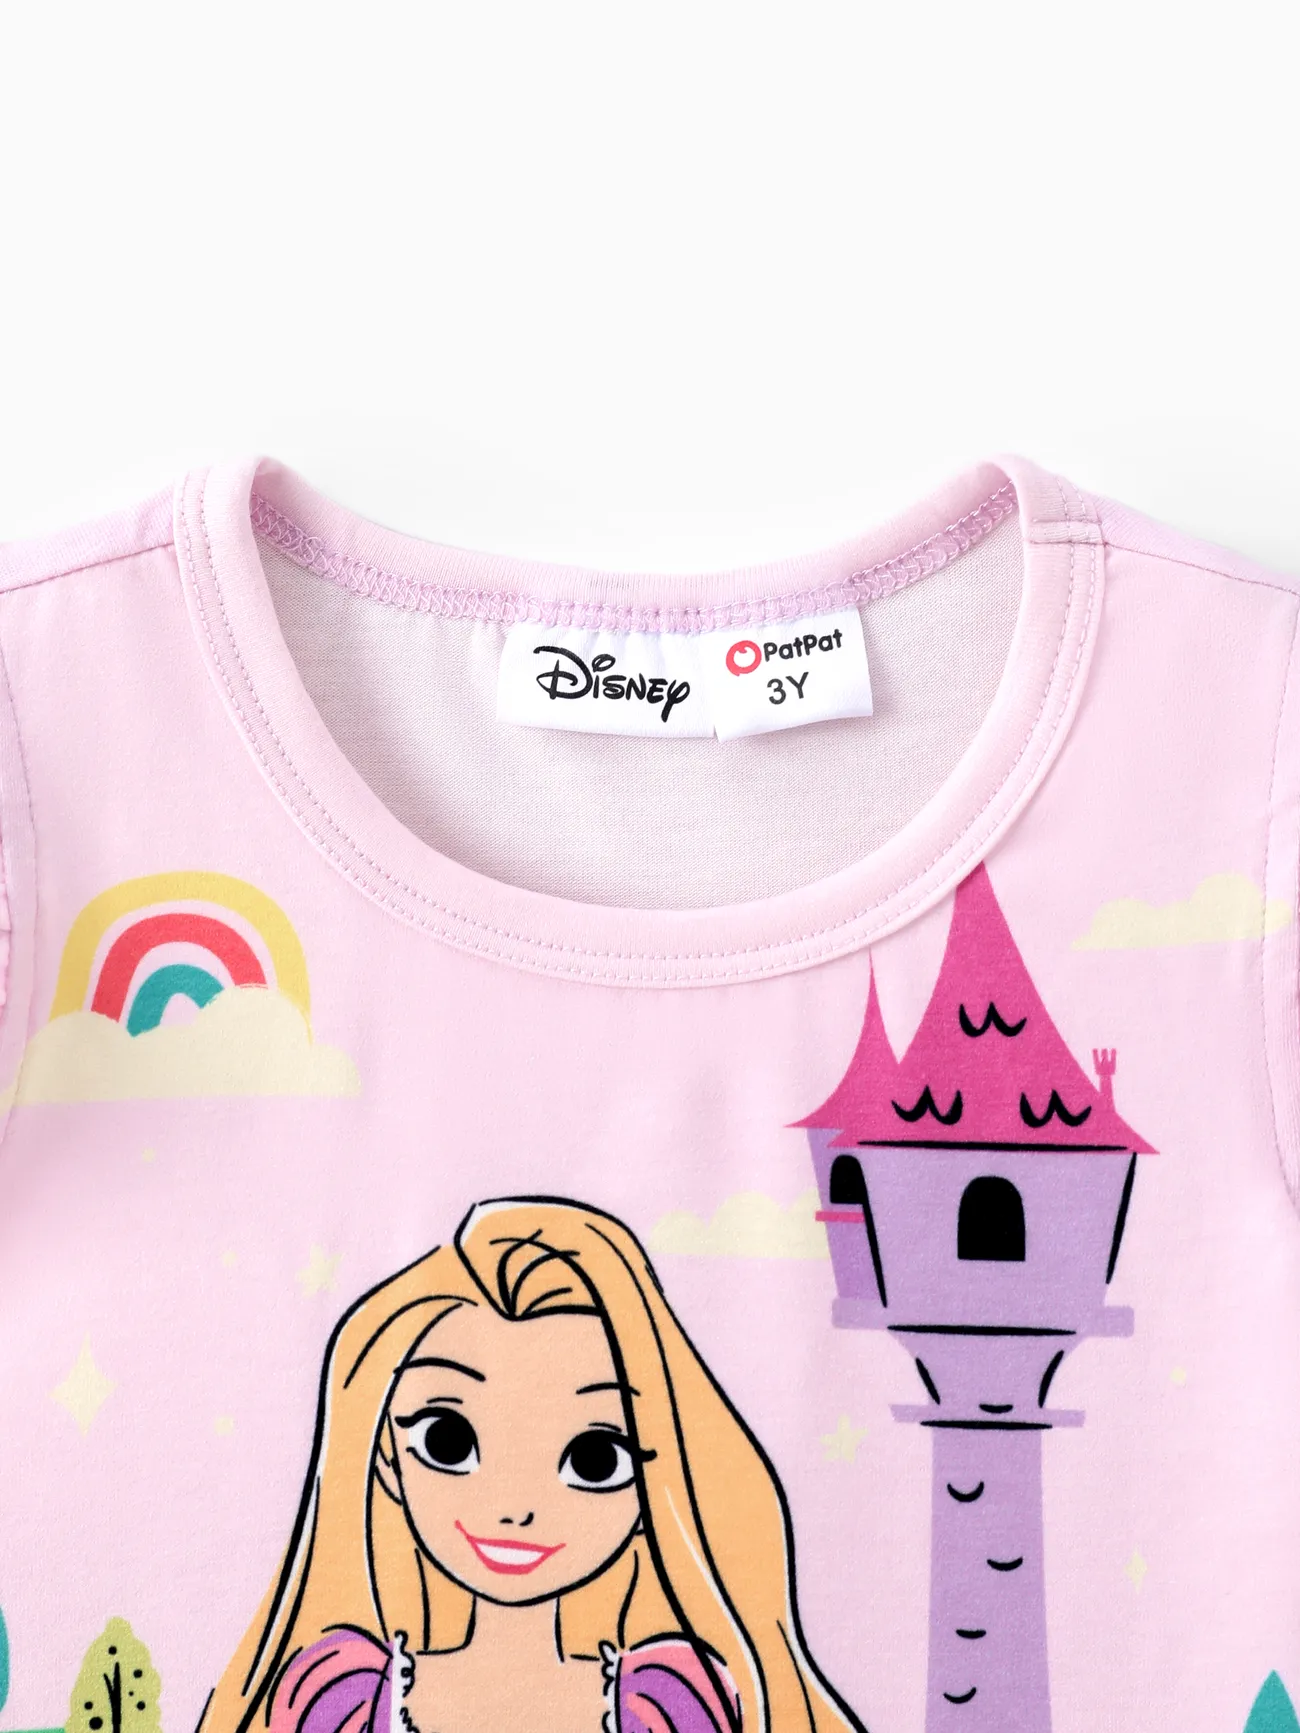 Disney Princess 2 unidades Criança Menina Extremidades franzidas Infantil conjuntos de camisetas Rosa big image 1